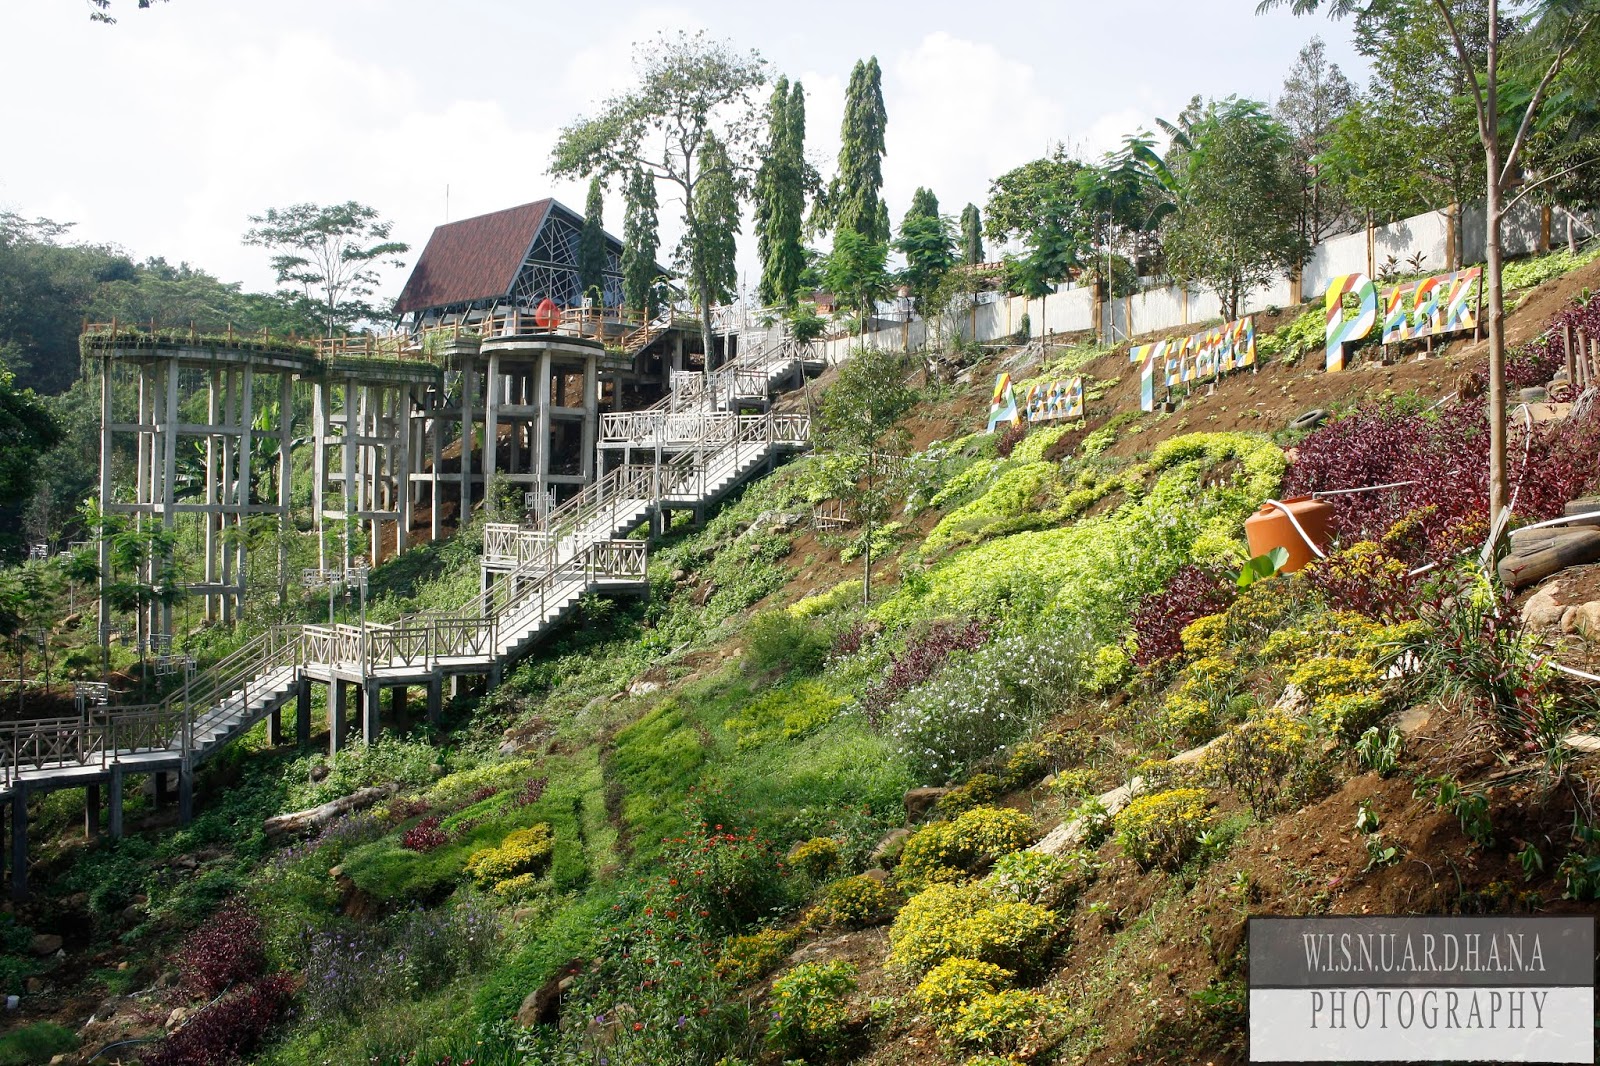 Wisata Mangkleng Ngrambe Ngawi Tempat Wisata Indonesia